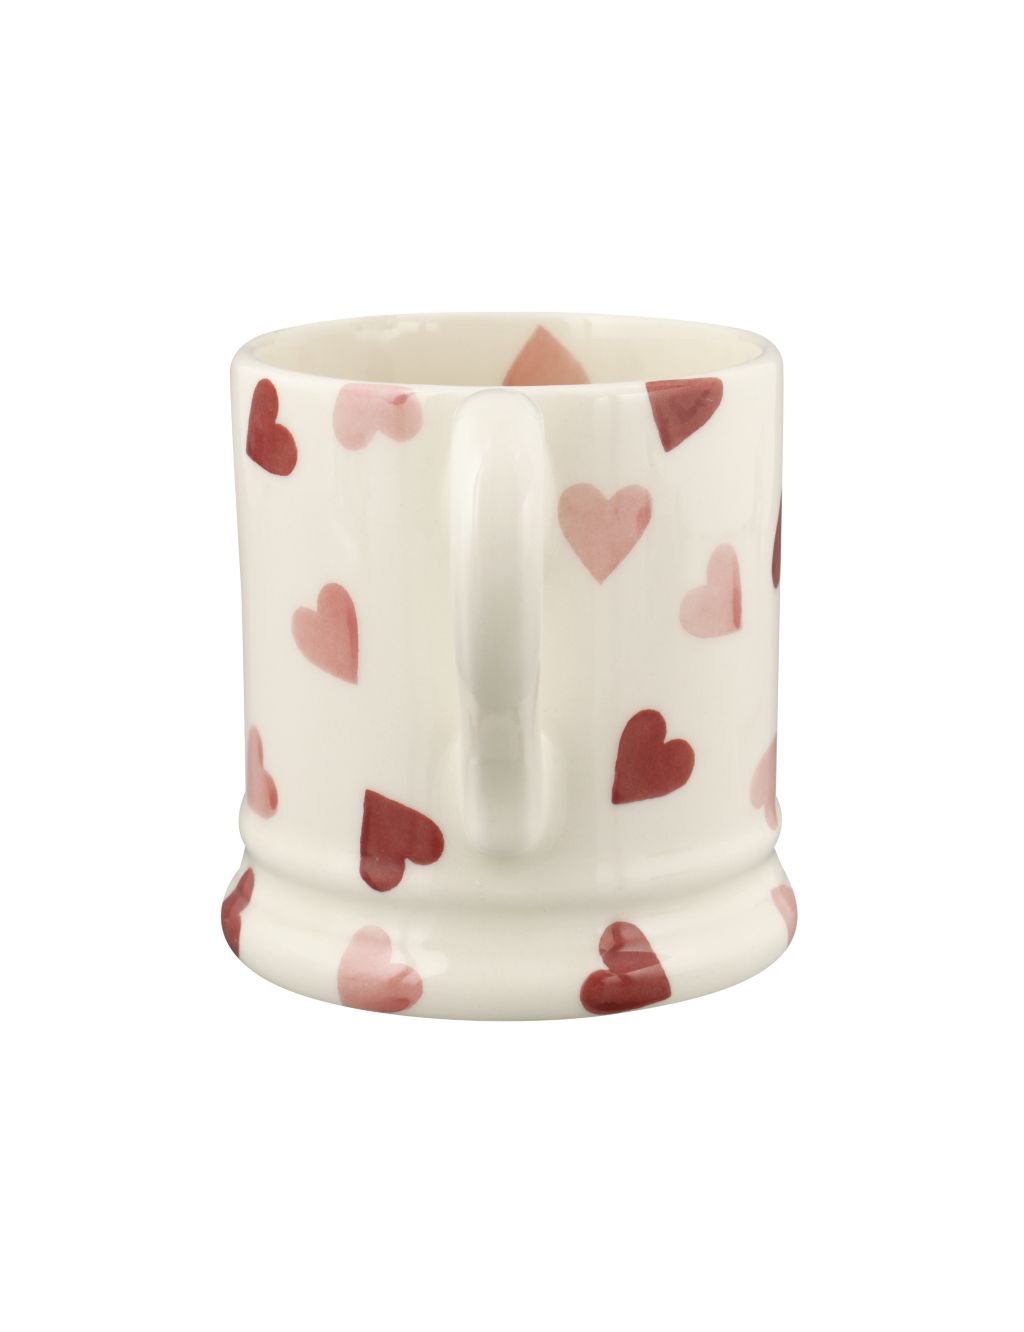 Pink Hearts Mug 2 of 6